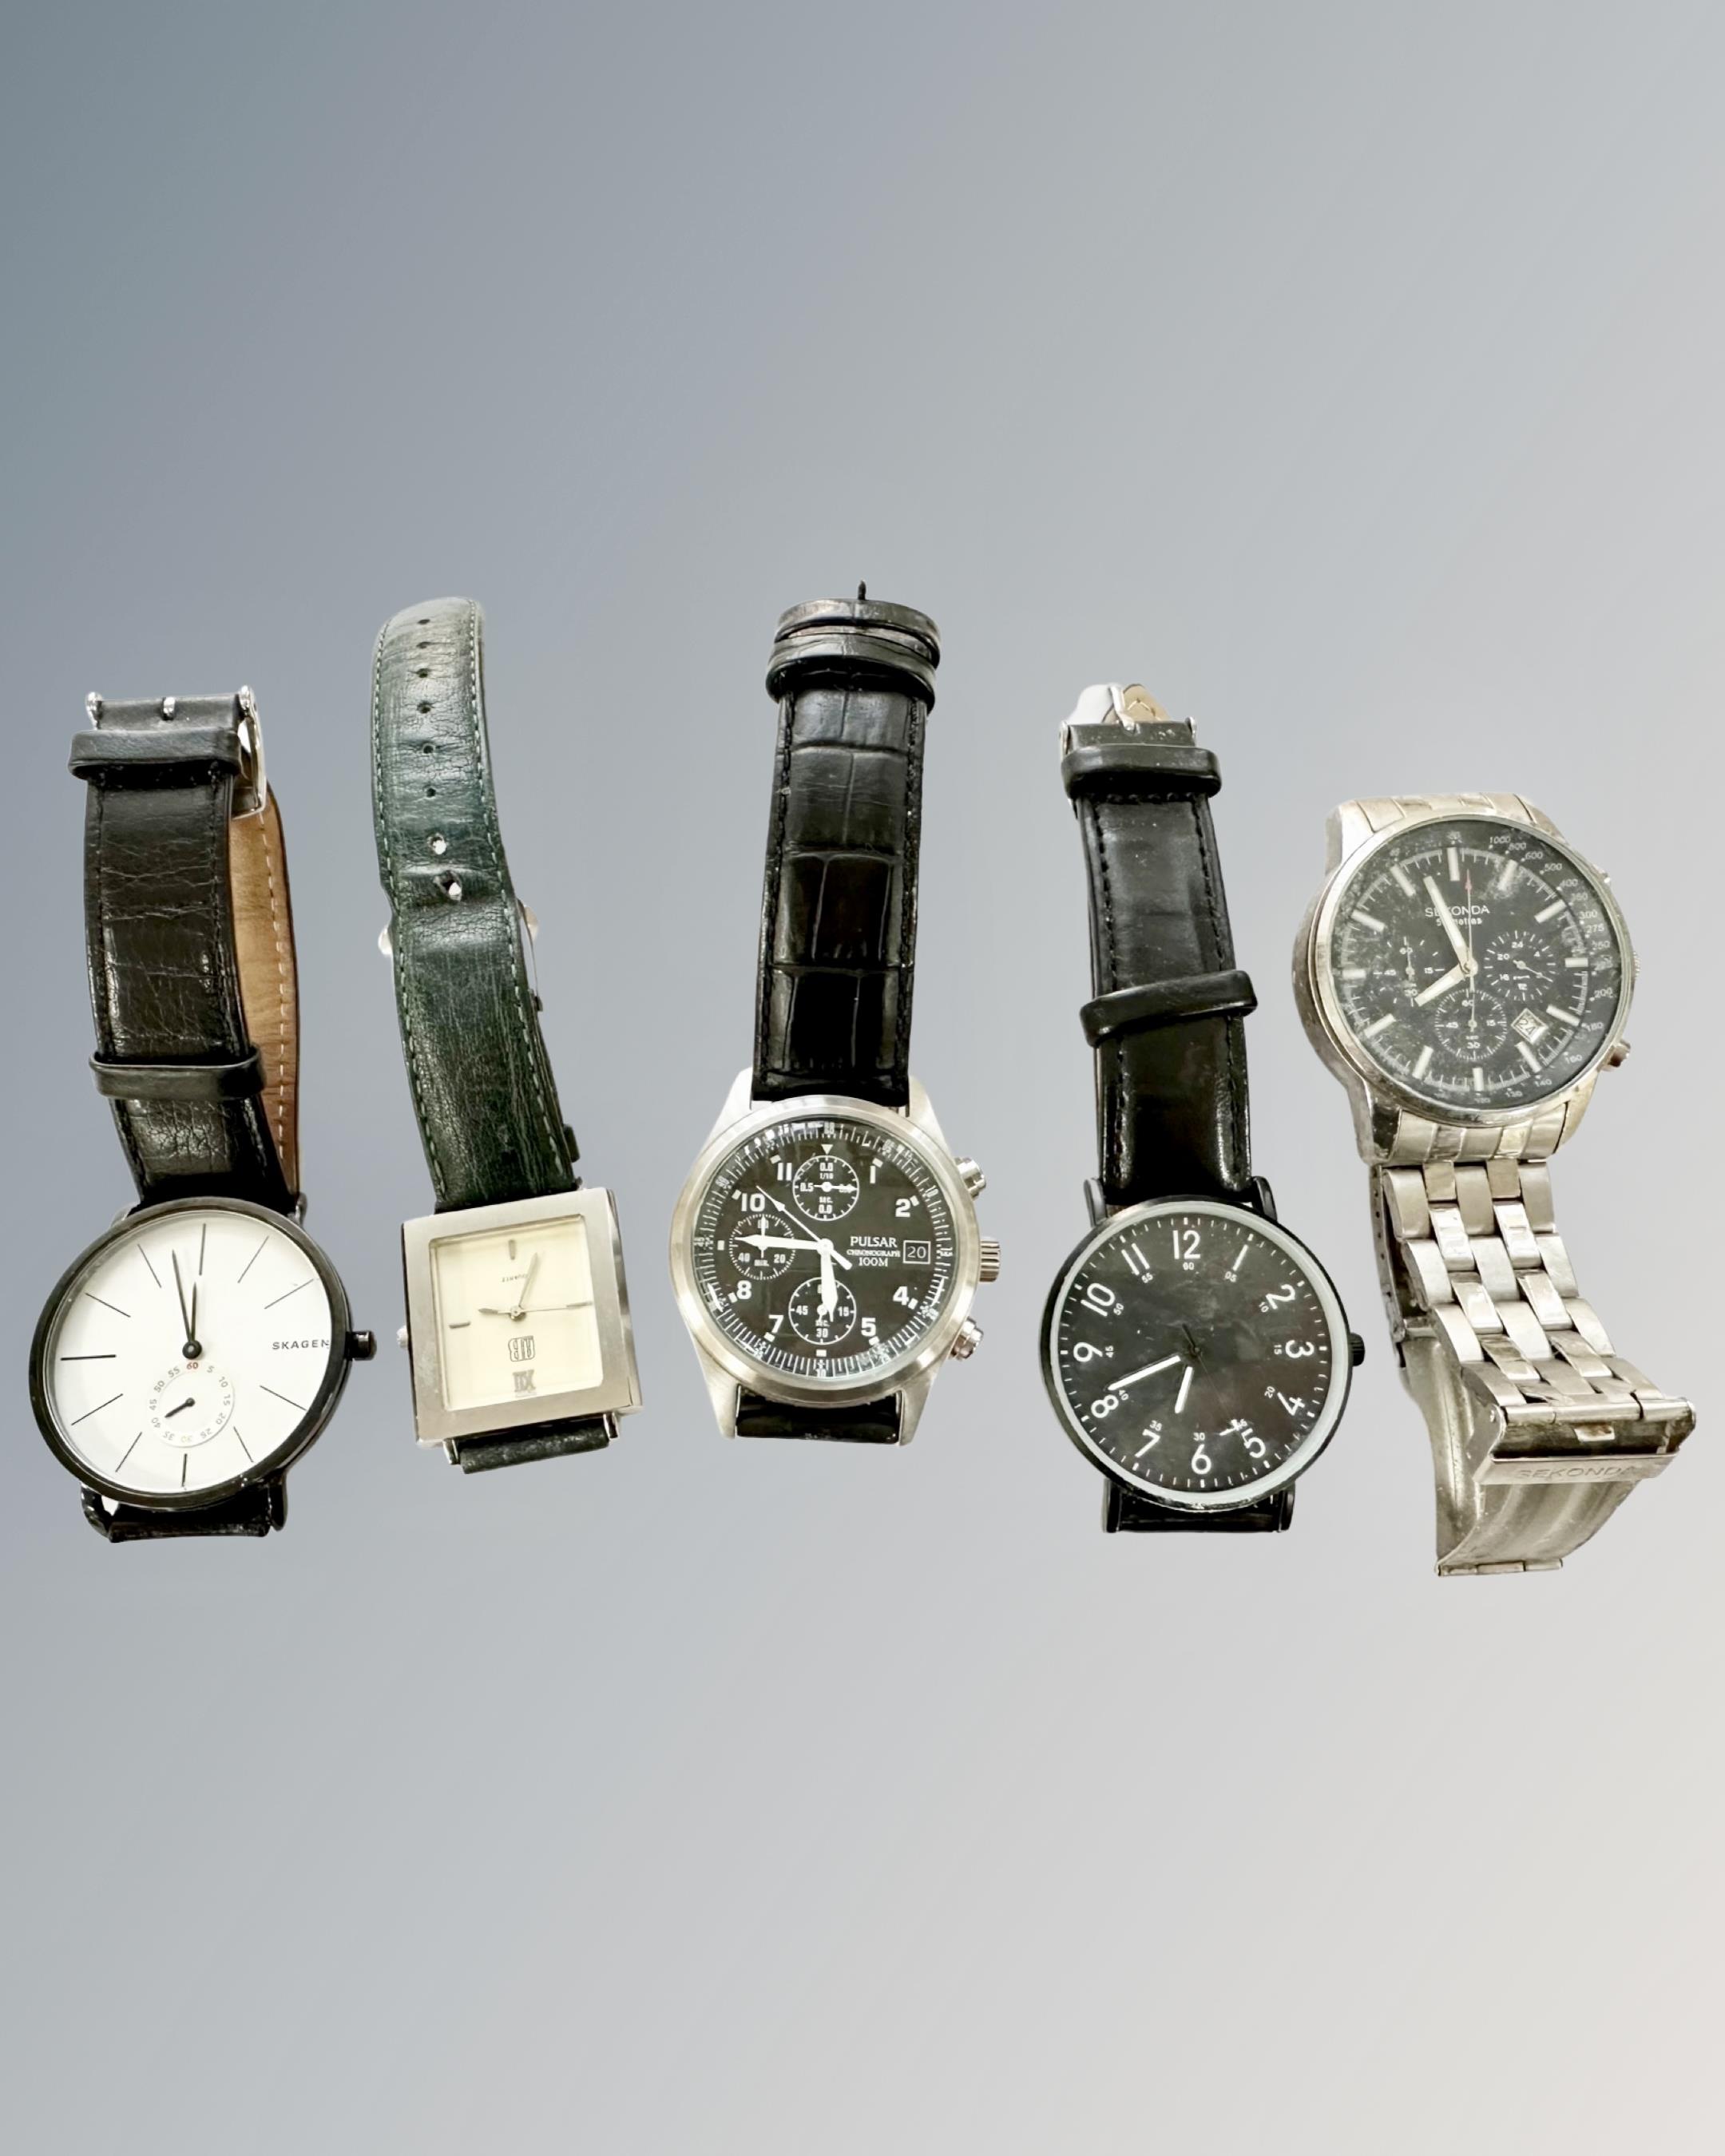 Five Gentleman's wristwatches - Skagen, Sekonda, Pulsar etc.